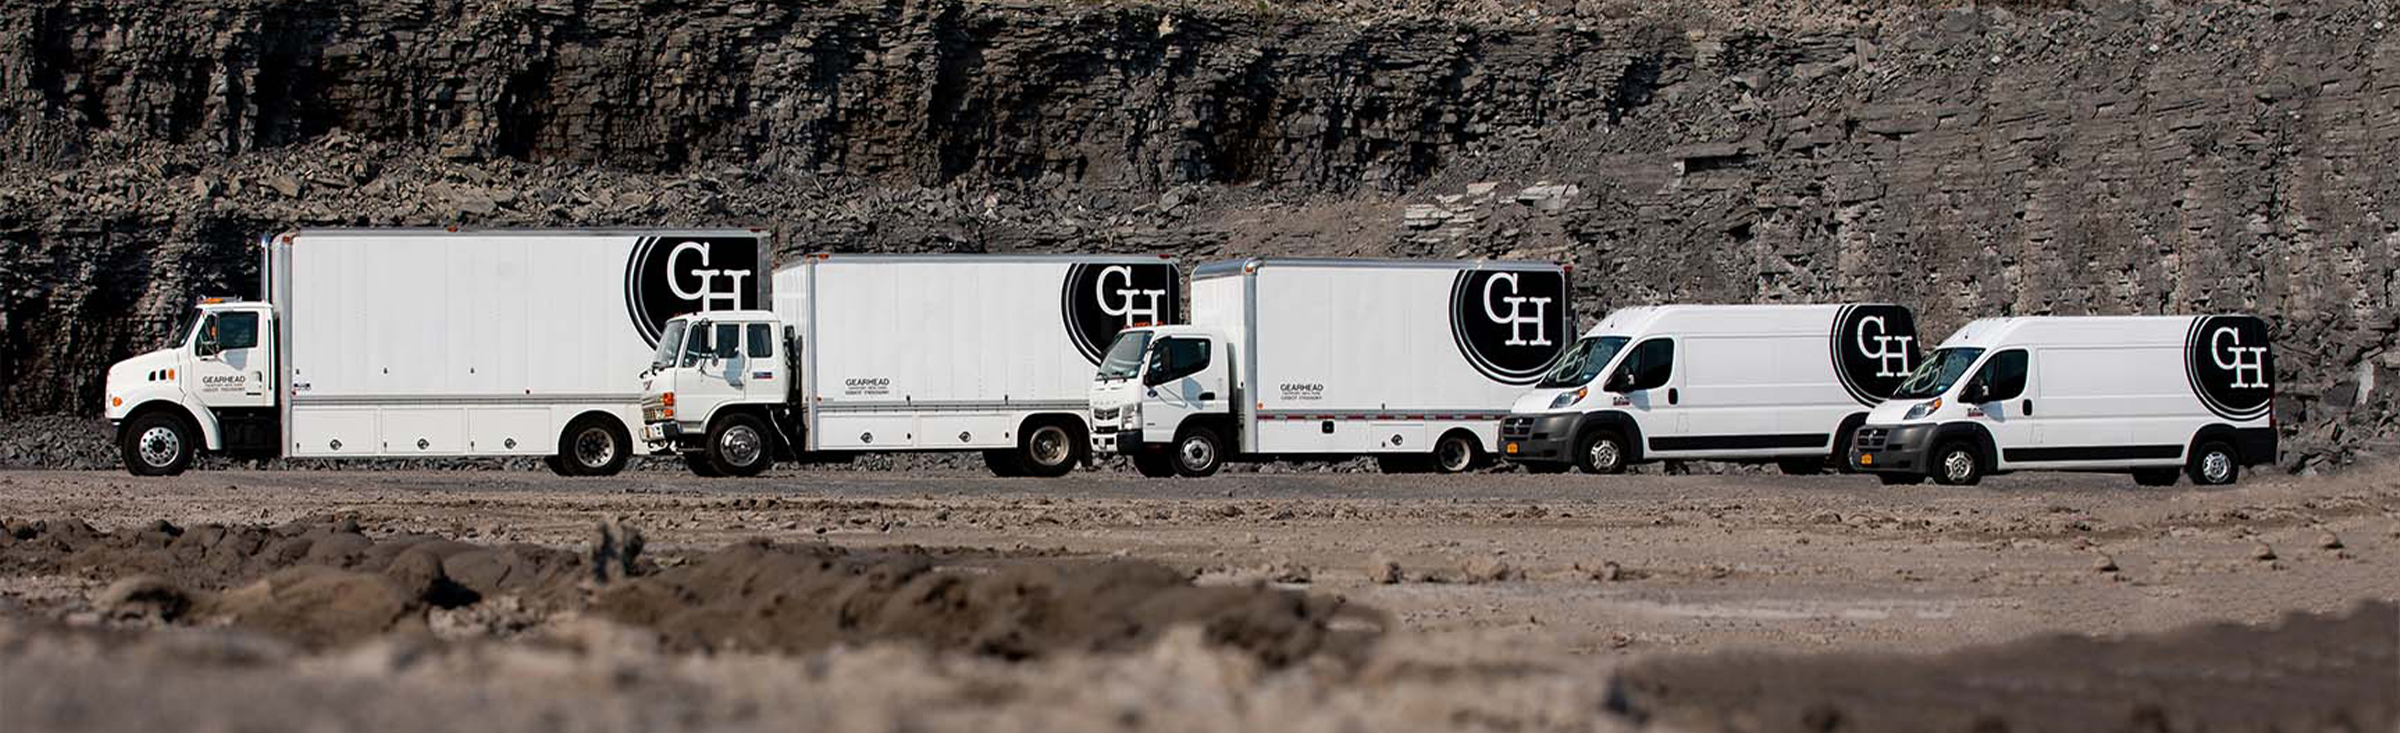 Gearhead Grip Truck Rentals Fleet by the cliffs